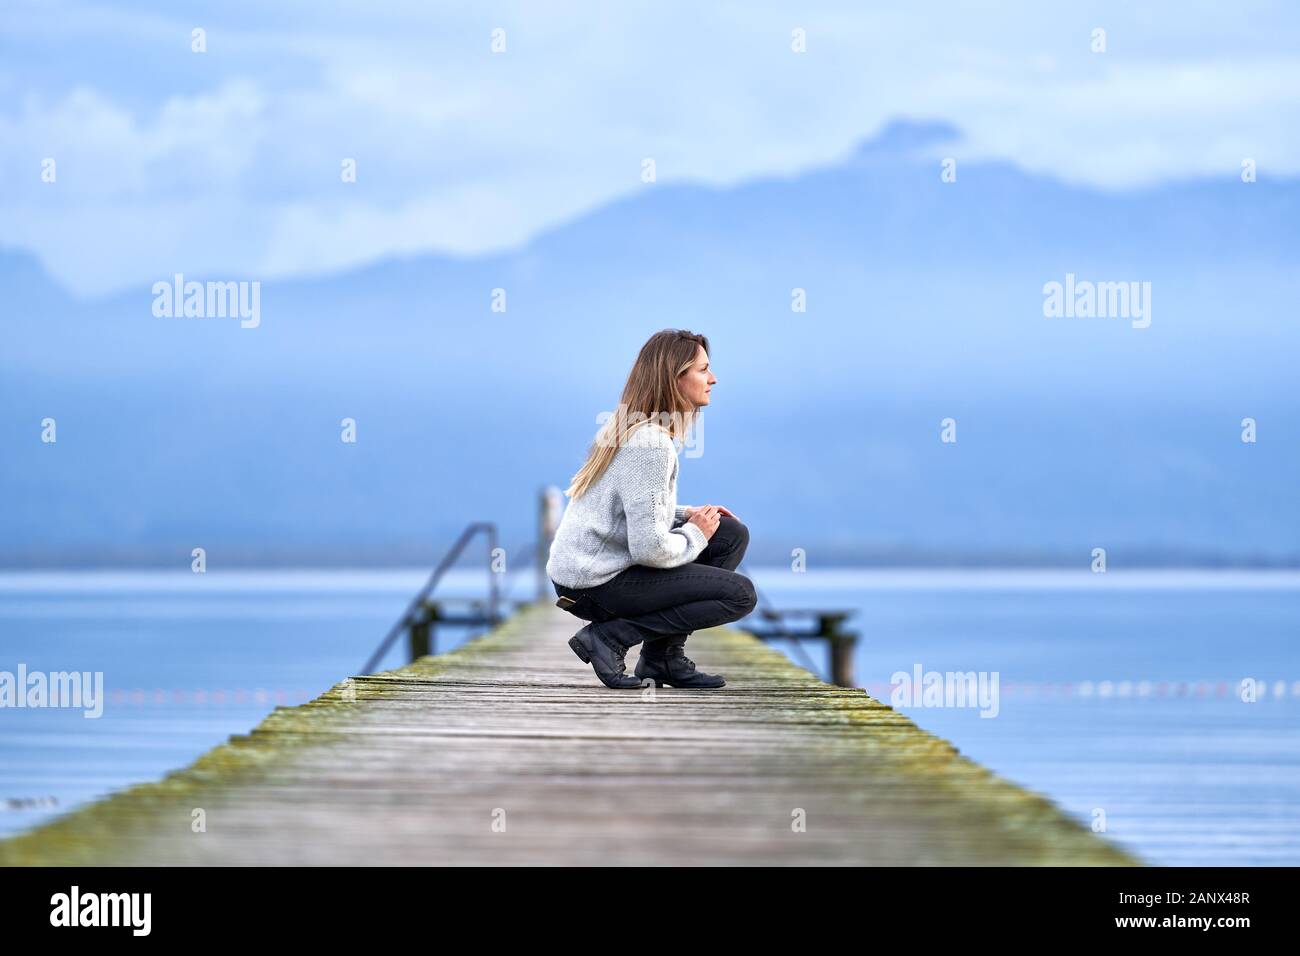 Jeune fille blonde avec un pull-over de laine, squattant sur une jetée en bois dans un lac calme de Bavière. Composition pittoresque avec montagnes et nuages bleus Banque D'Images